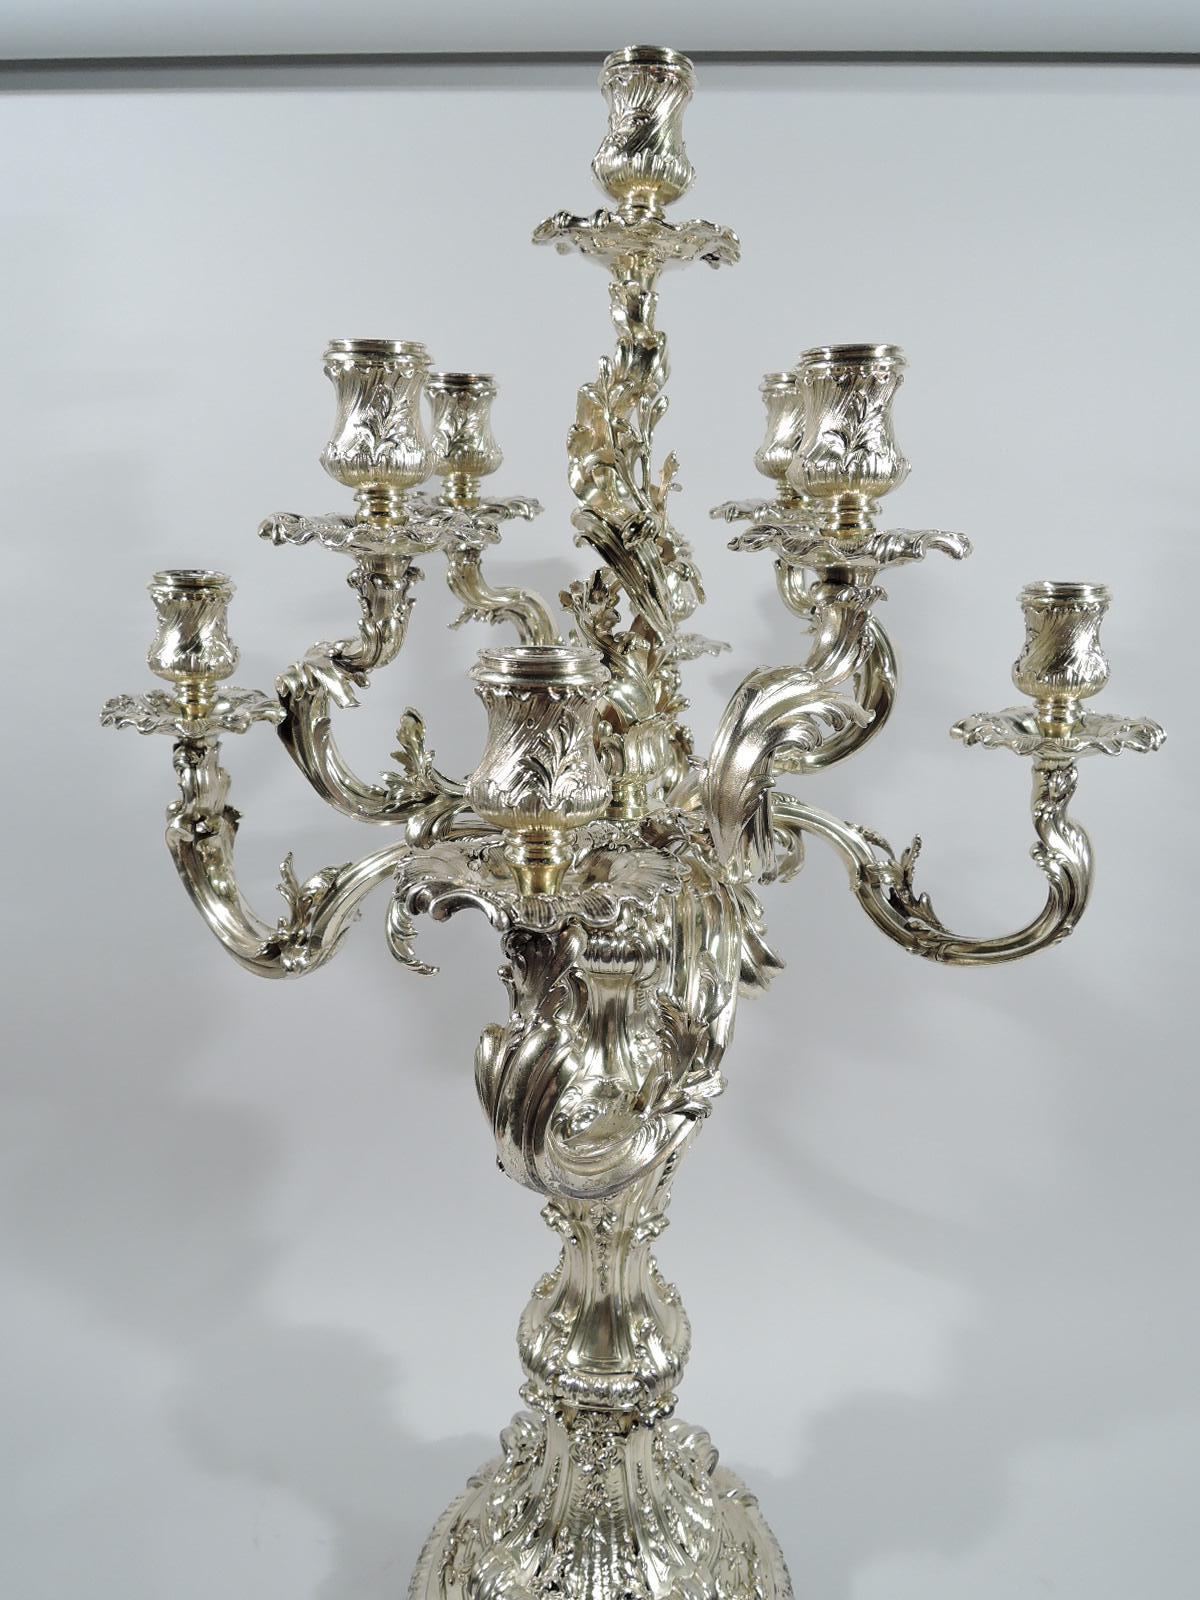 Rococo Revival Splendid and Massive French Rococo Silver Gilt 9-Light Candelabra